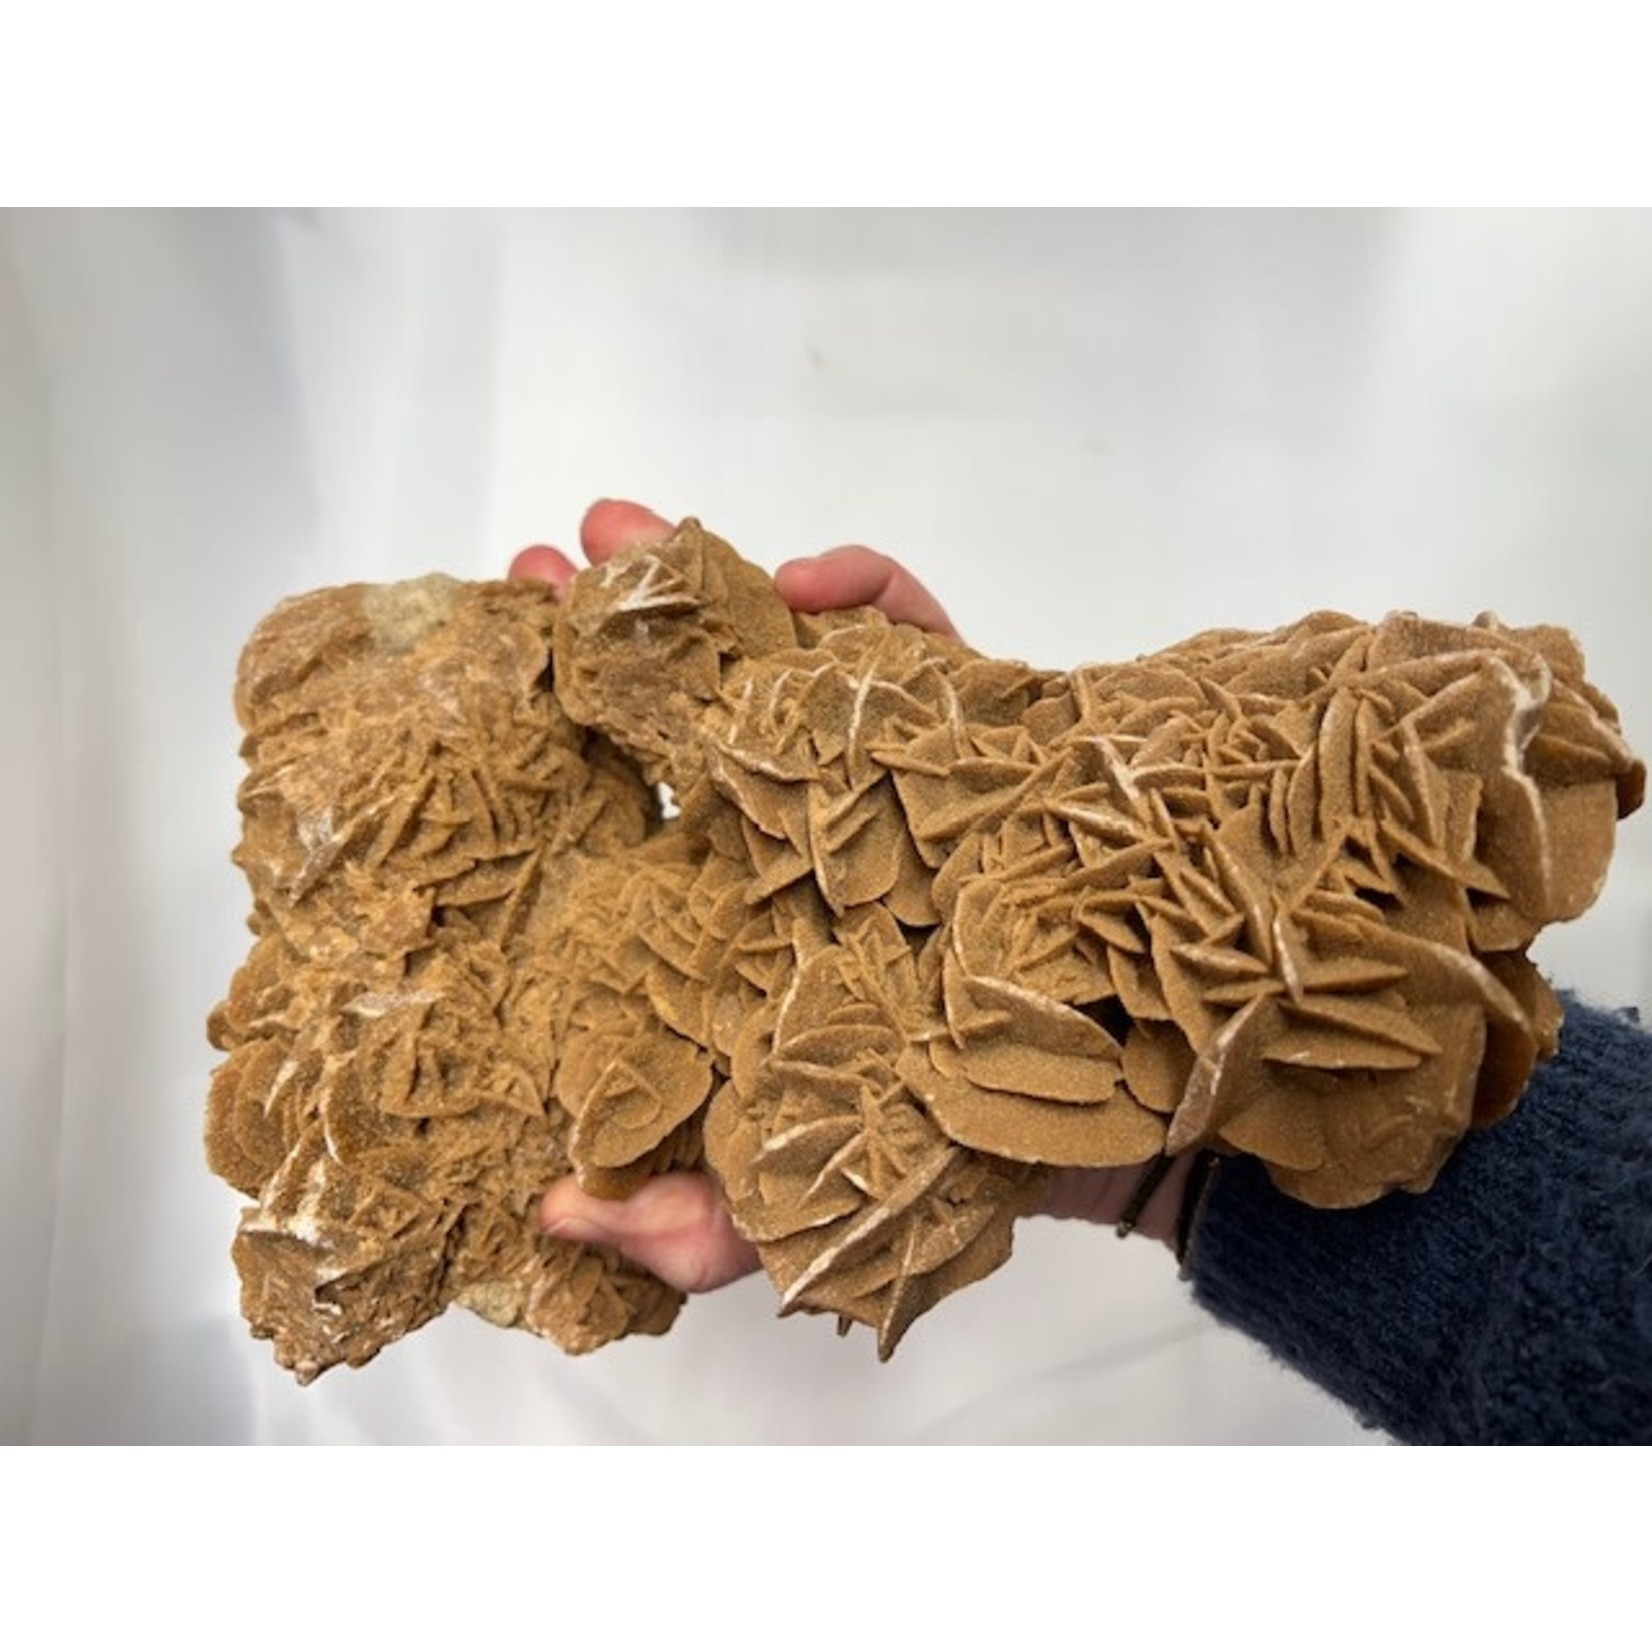 Woestijnroos 2.28 kg  (23x14x13 cm)- Marokko